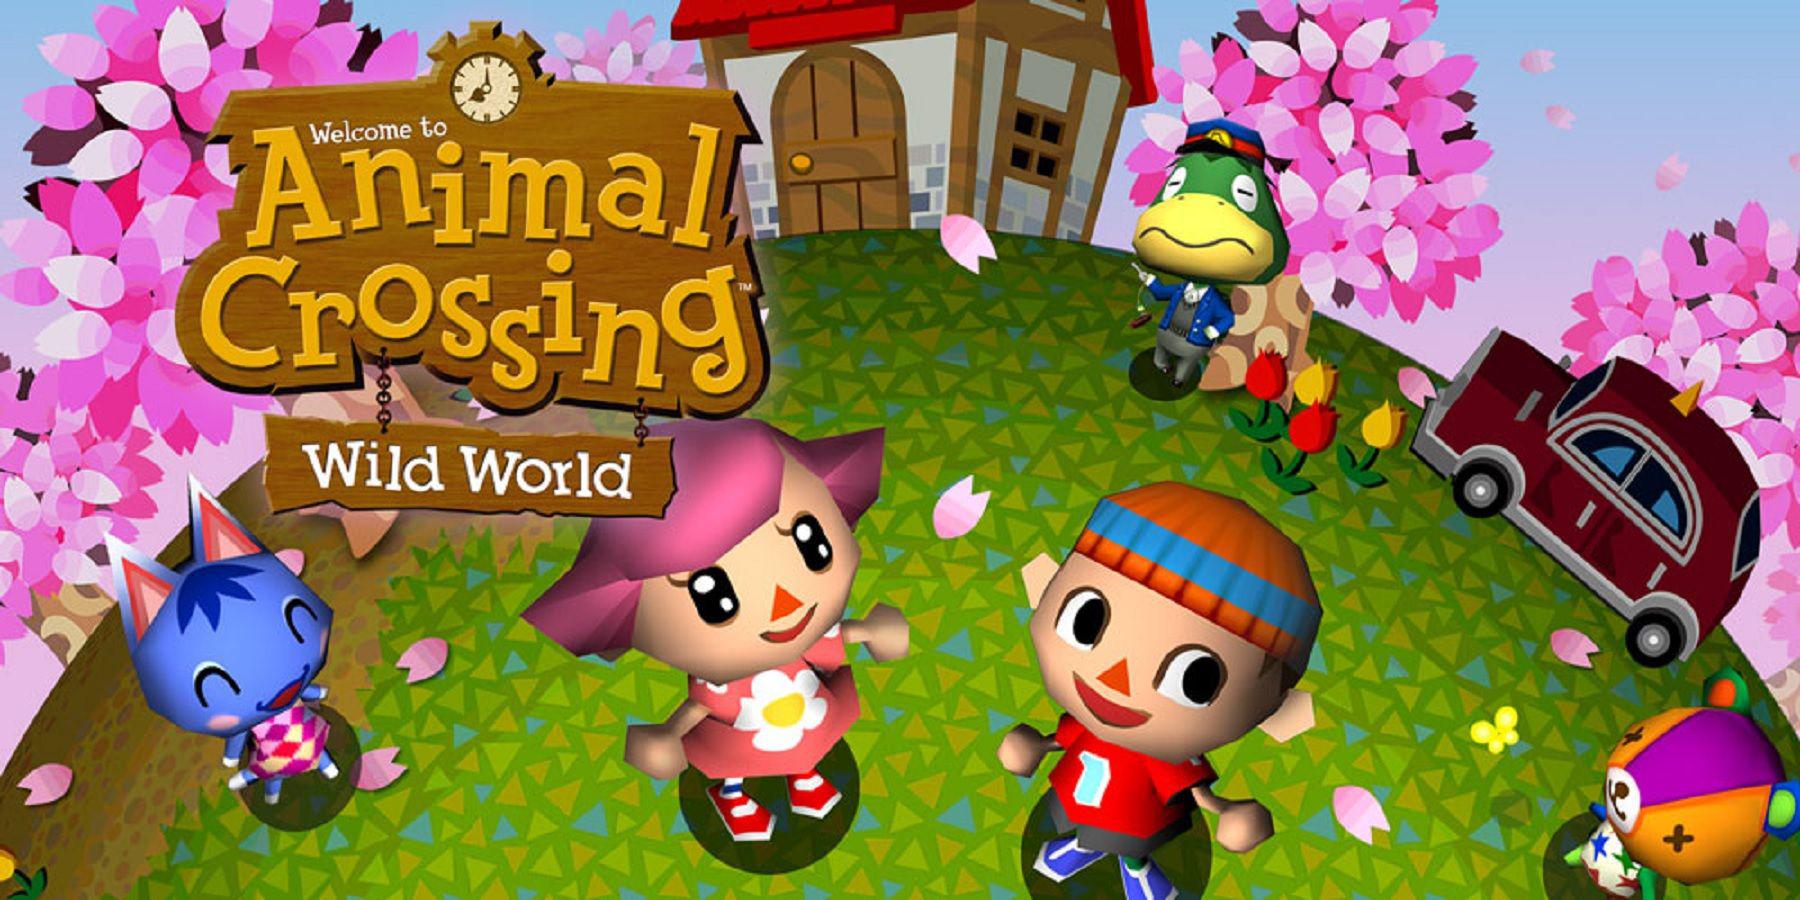 O que vem a seguir para Animal Crossing após New Horizons